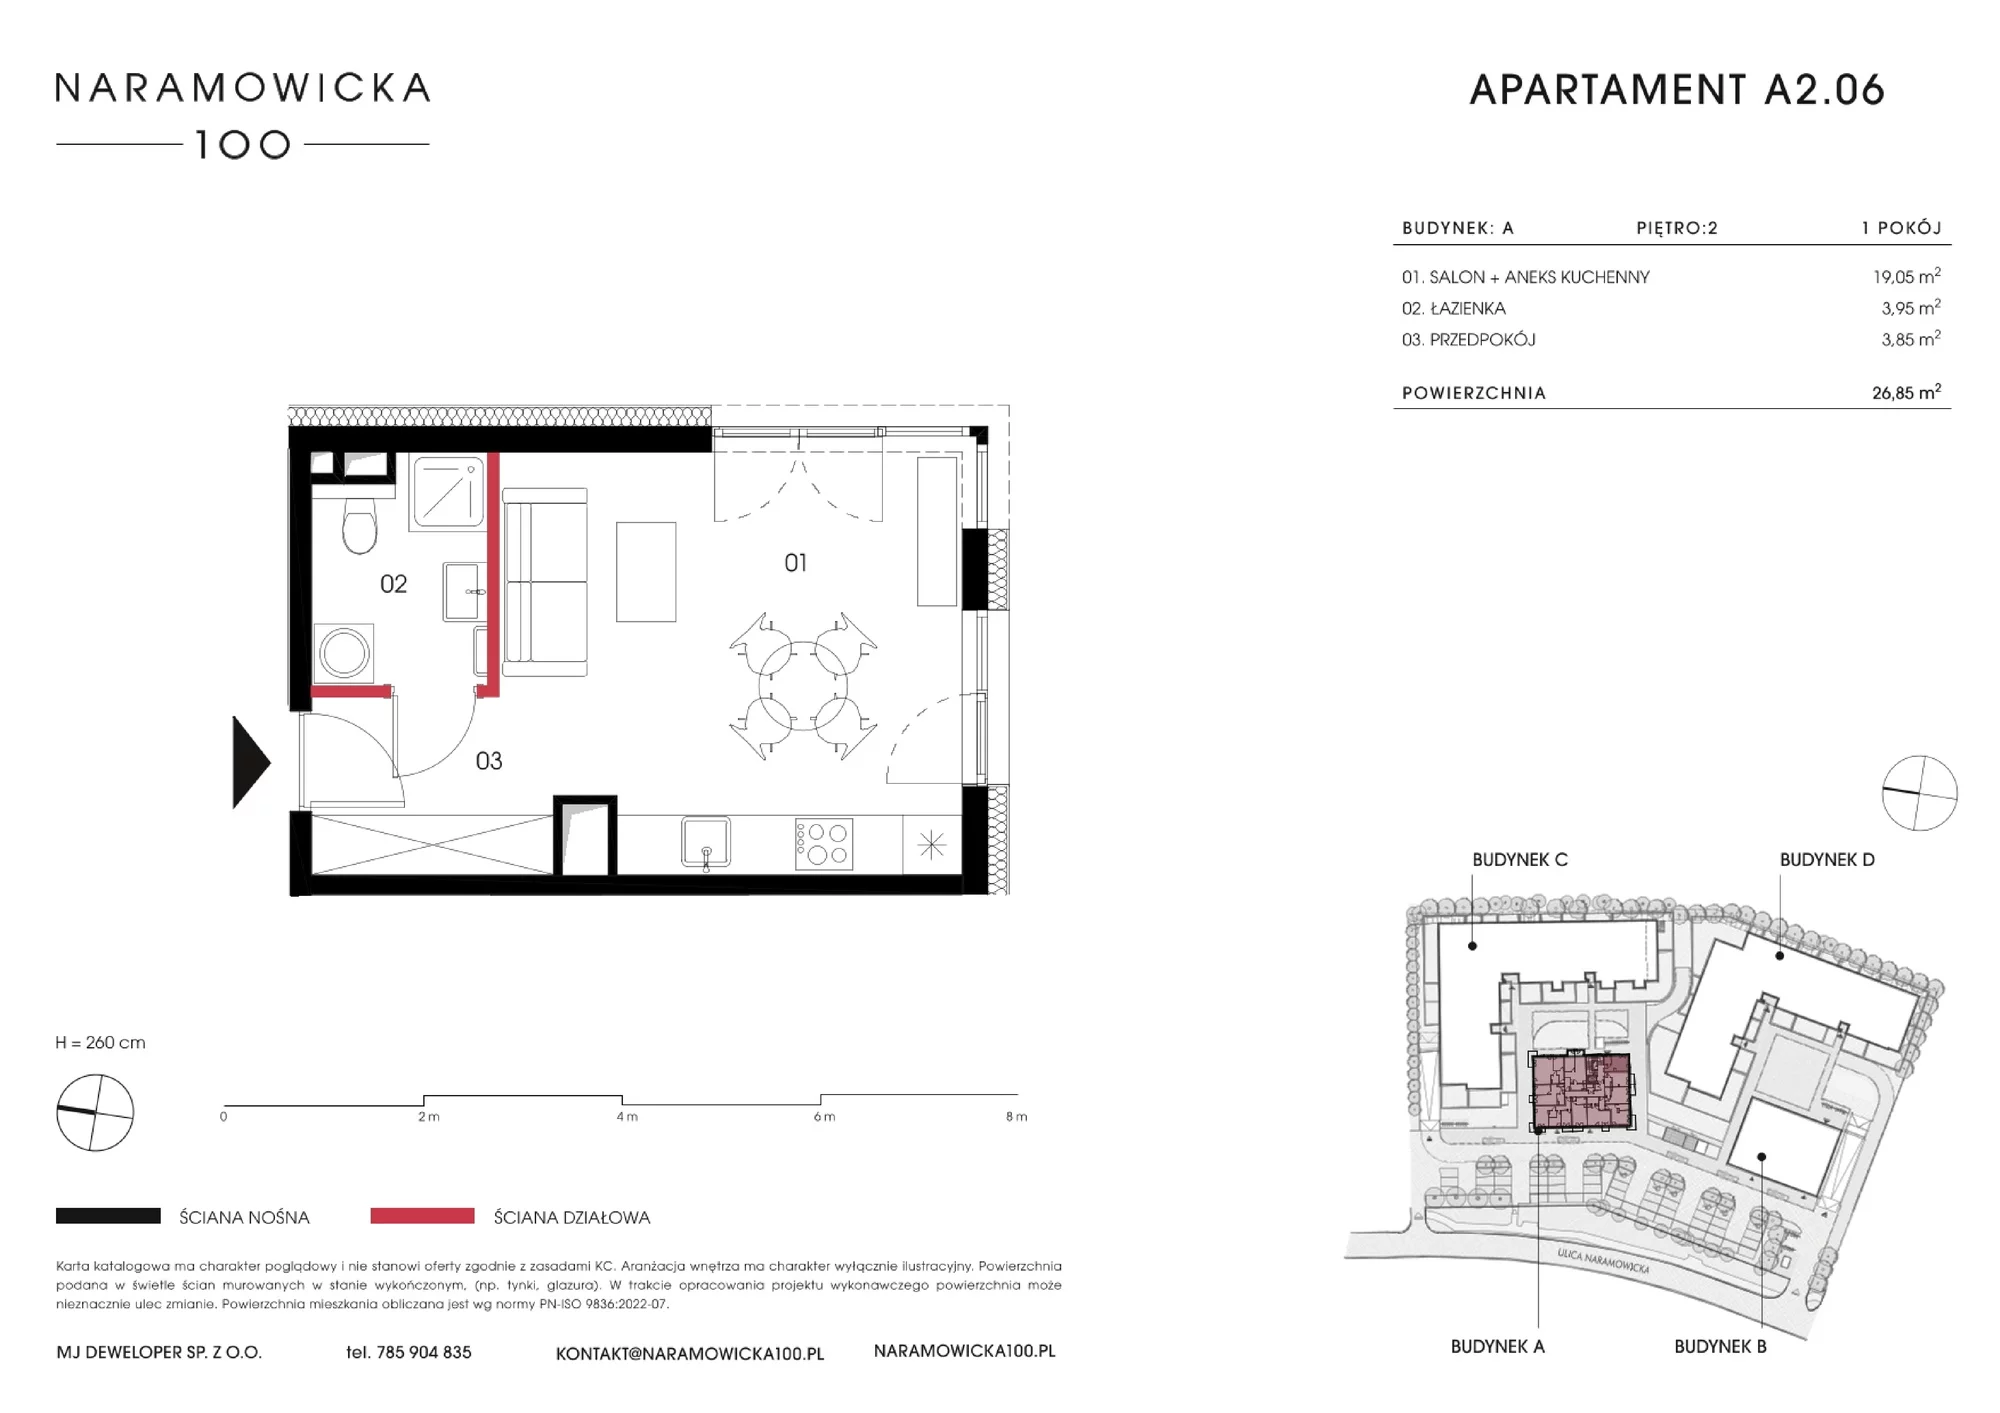 Mieszkanie 26,73 m², piętro 2, oferta nr A 2.06, Naramowicka, Poznań, Winogrady, Winogrady, ul. Naramowicka 100